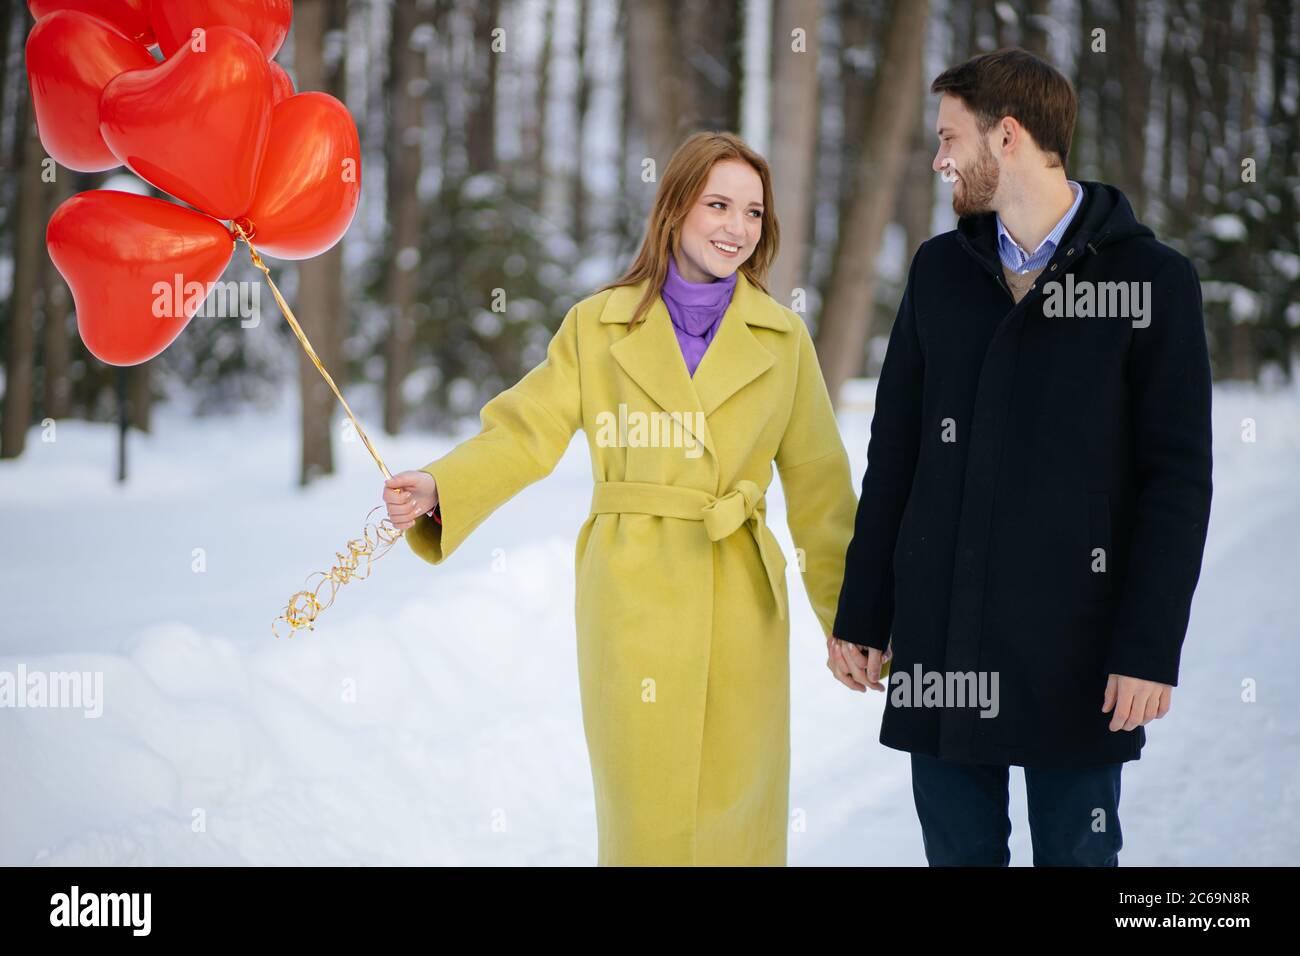 Fröhlich glücklich kaukasischen Paar, schöne Frau und gutaussehende Kerl auf einem romantischen Datum mit roten Luftballons. Liebe, romantische Datum Konzept Stockfoto